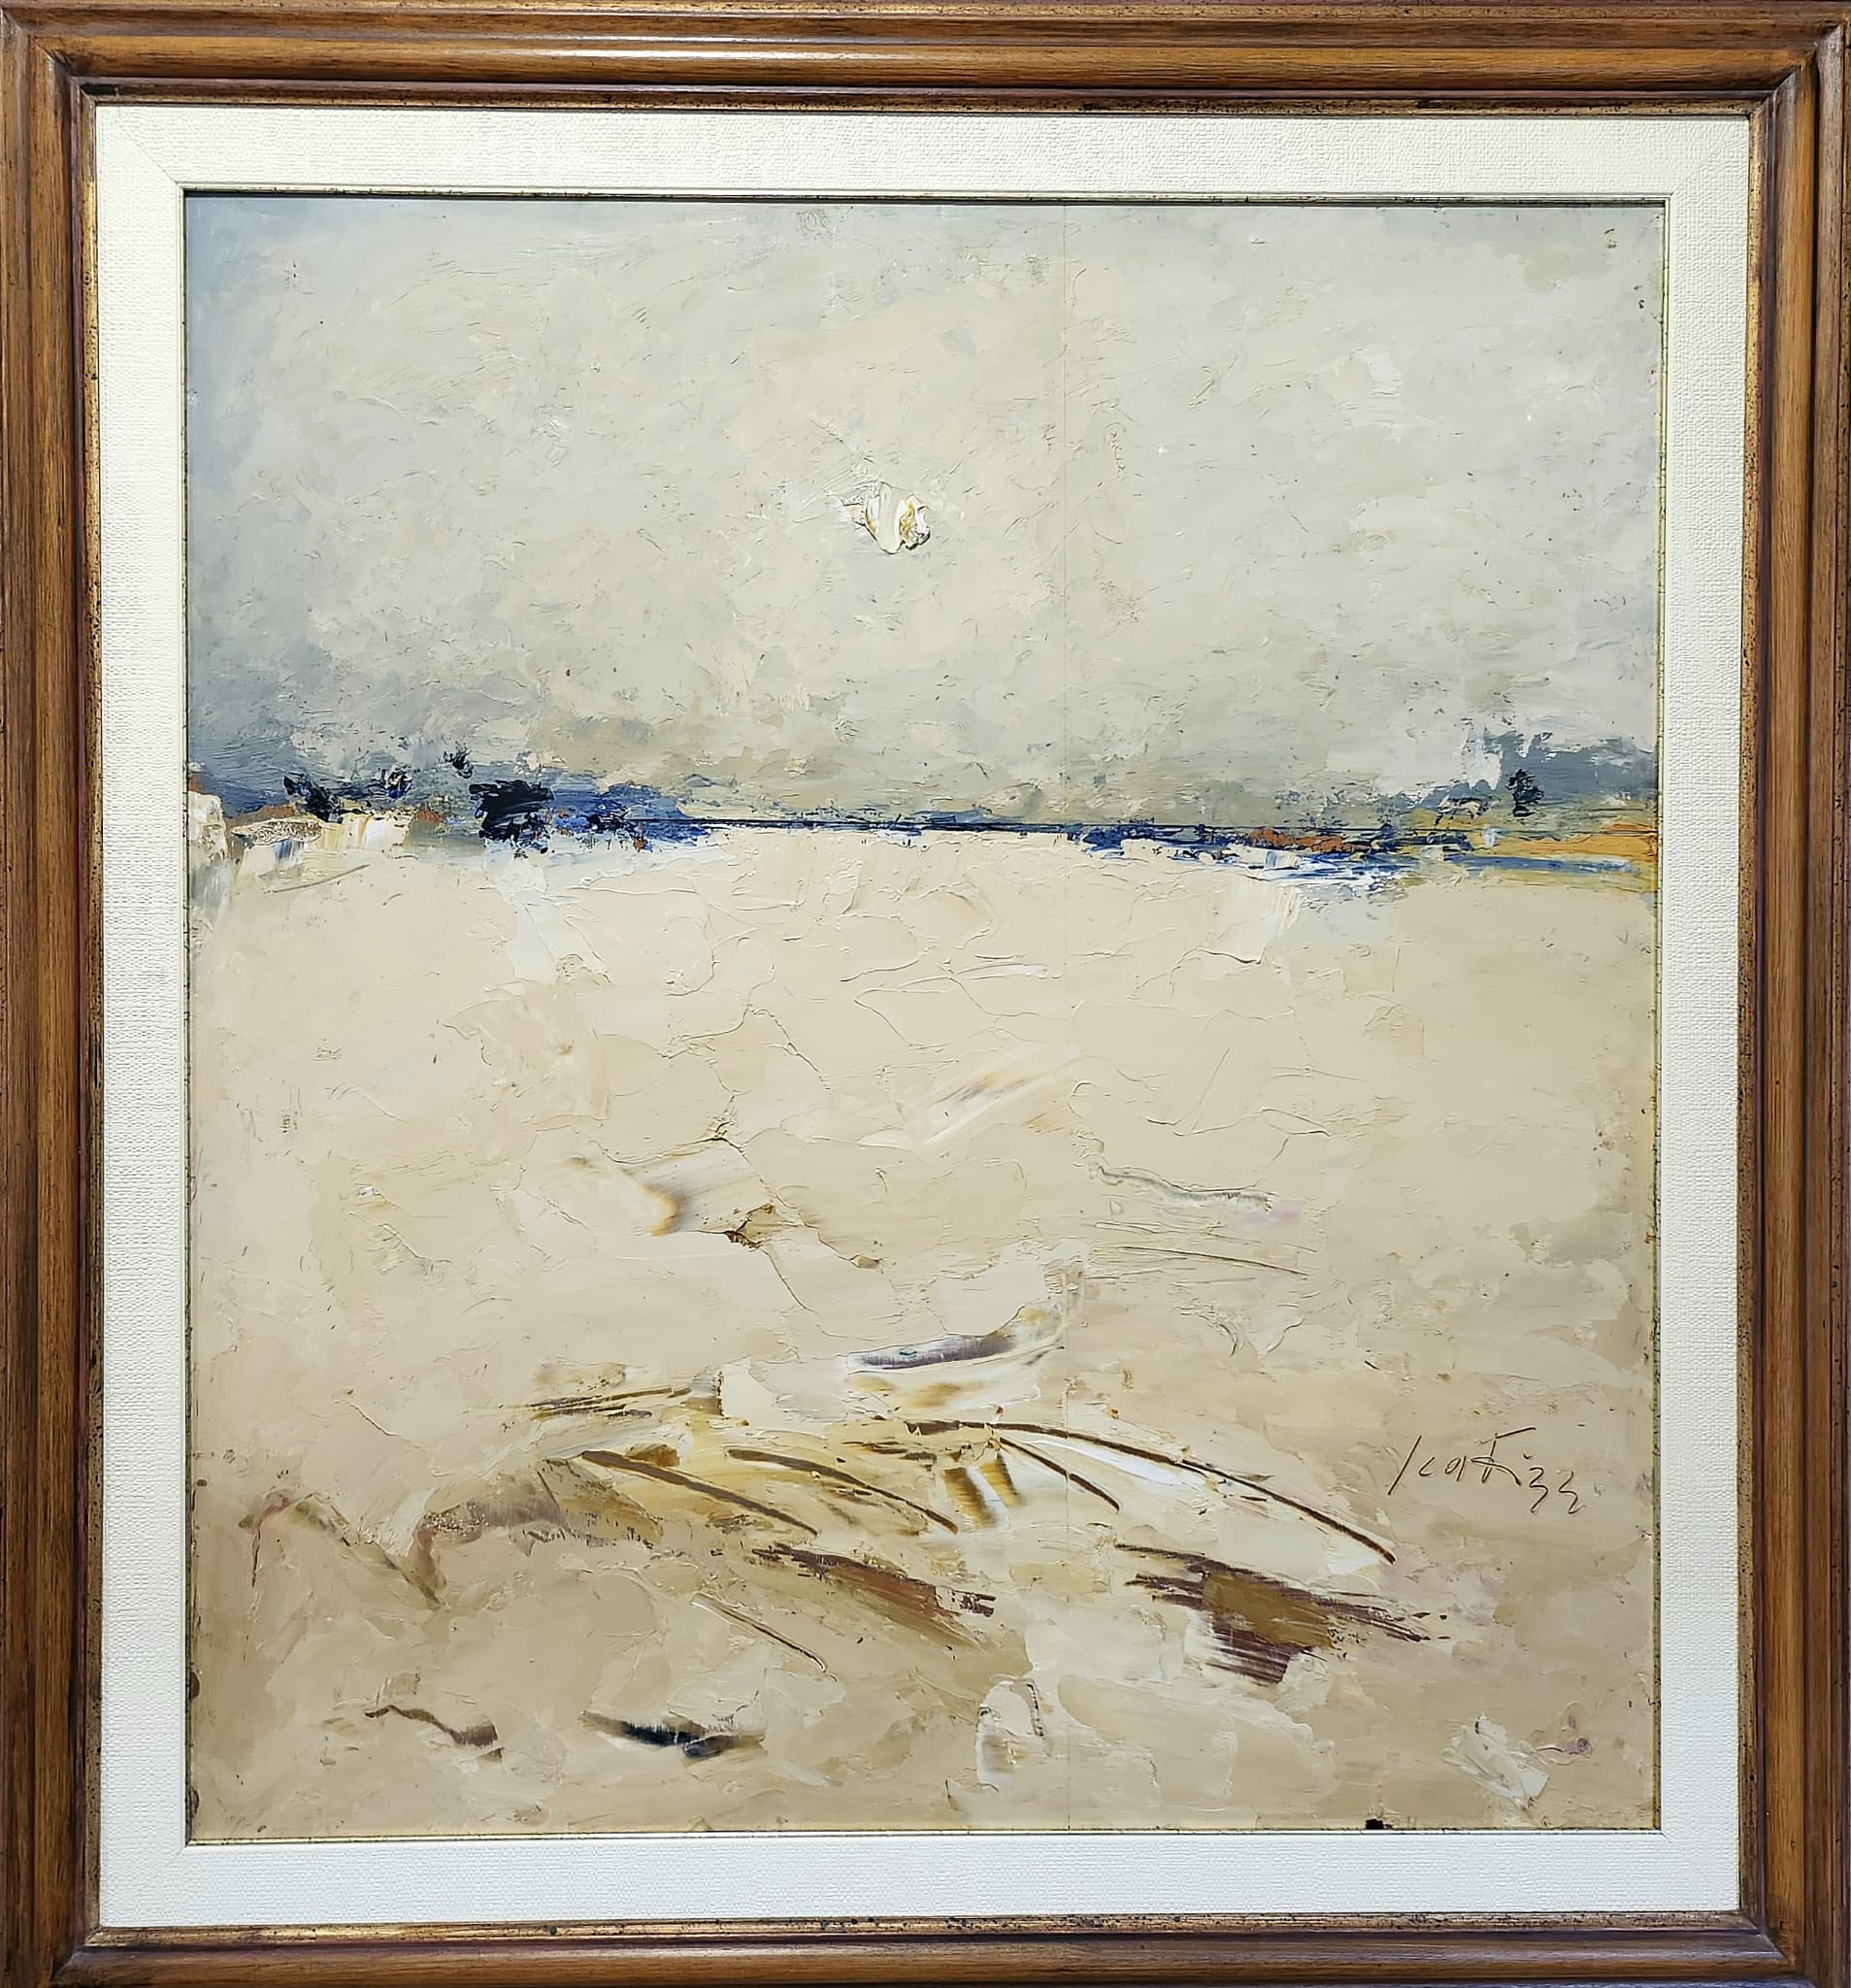 Sergio Scatizzi, Spiaggia a Vada, olio su tavola, cm 92x82,8, 1988-1989